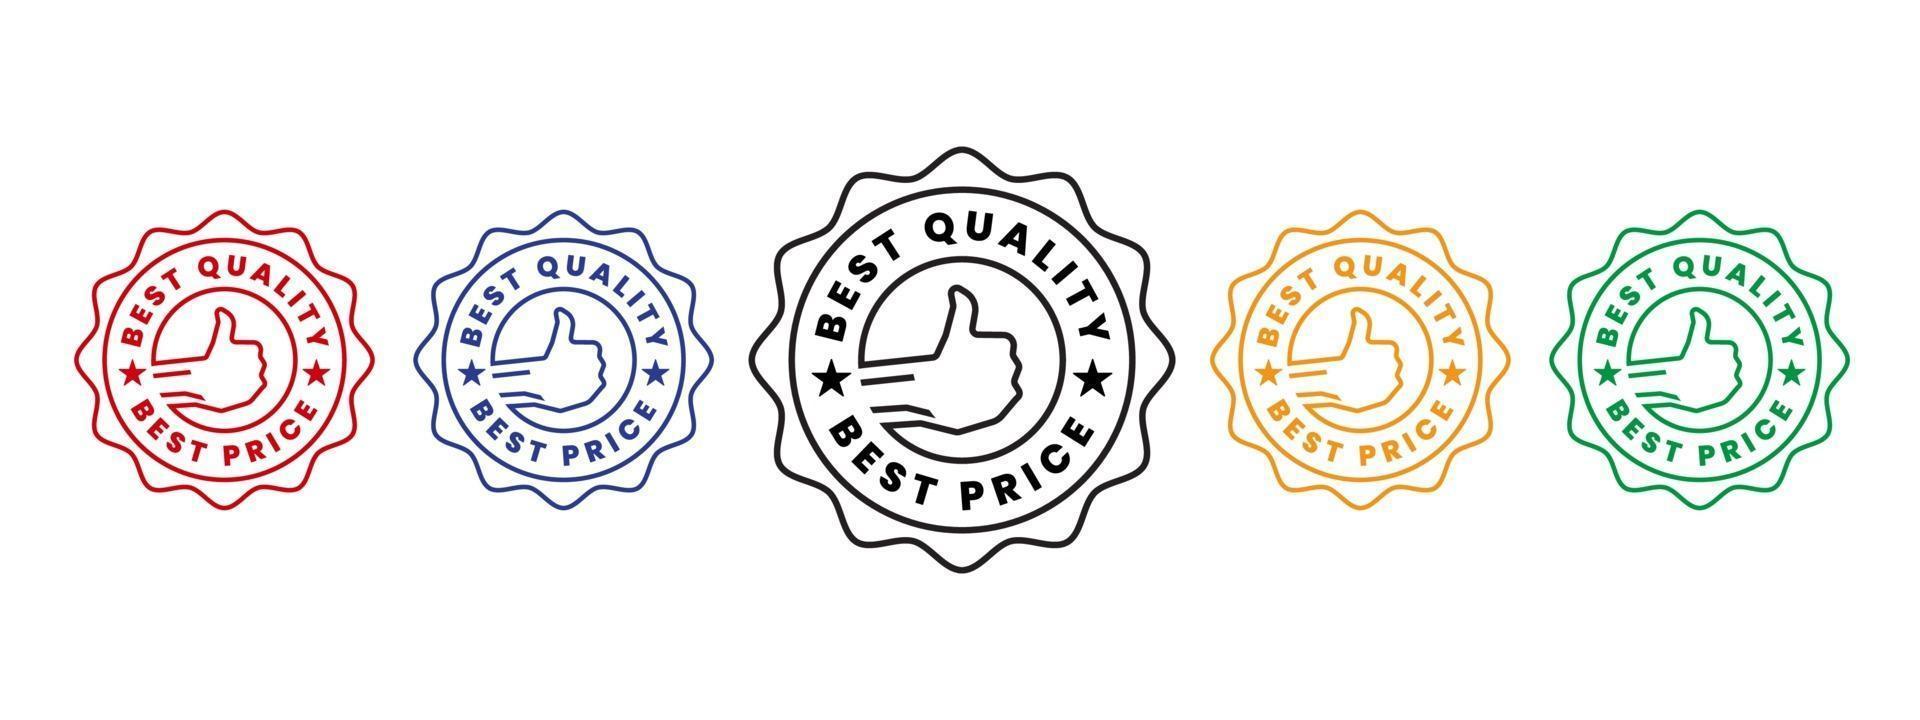 el mejor vendedor y el mejor precio recomendado insignia o icono del logotipo vector